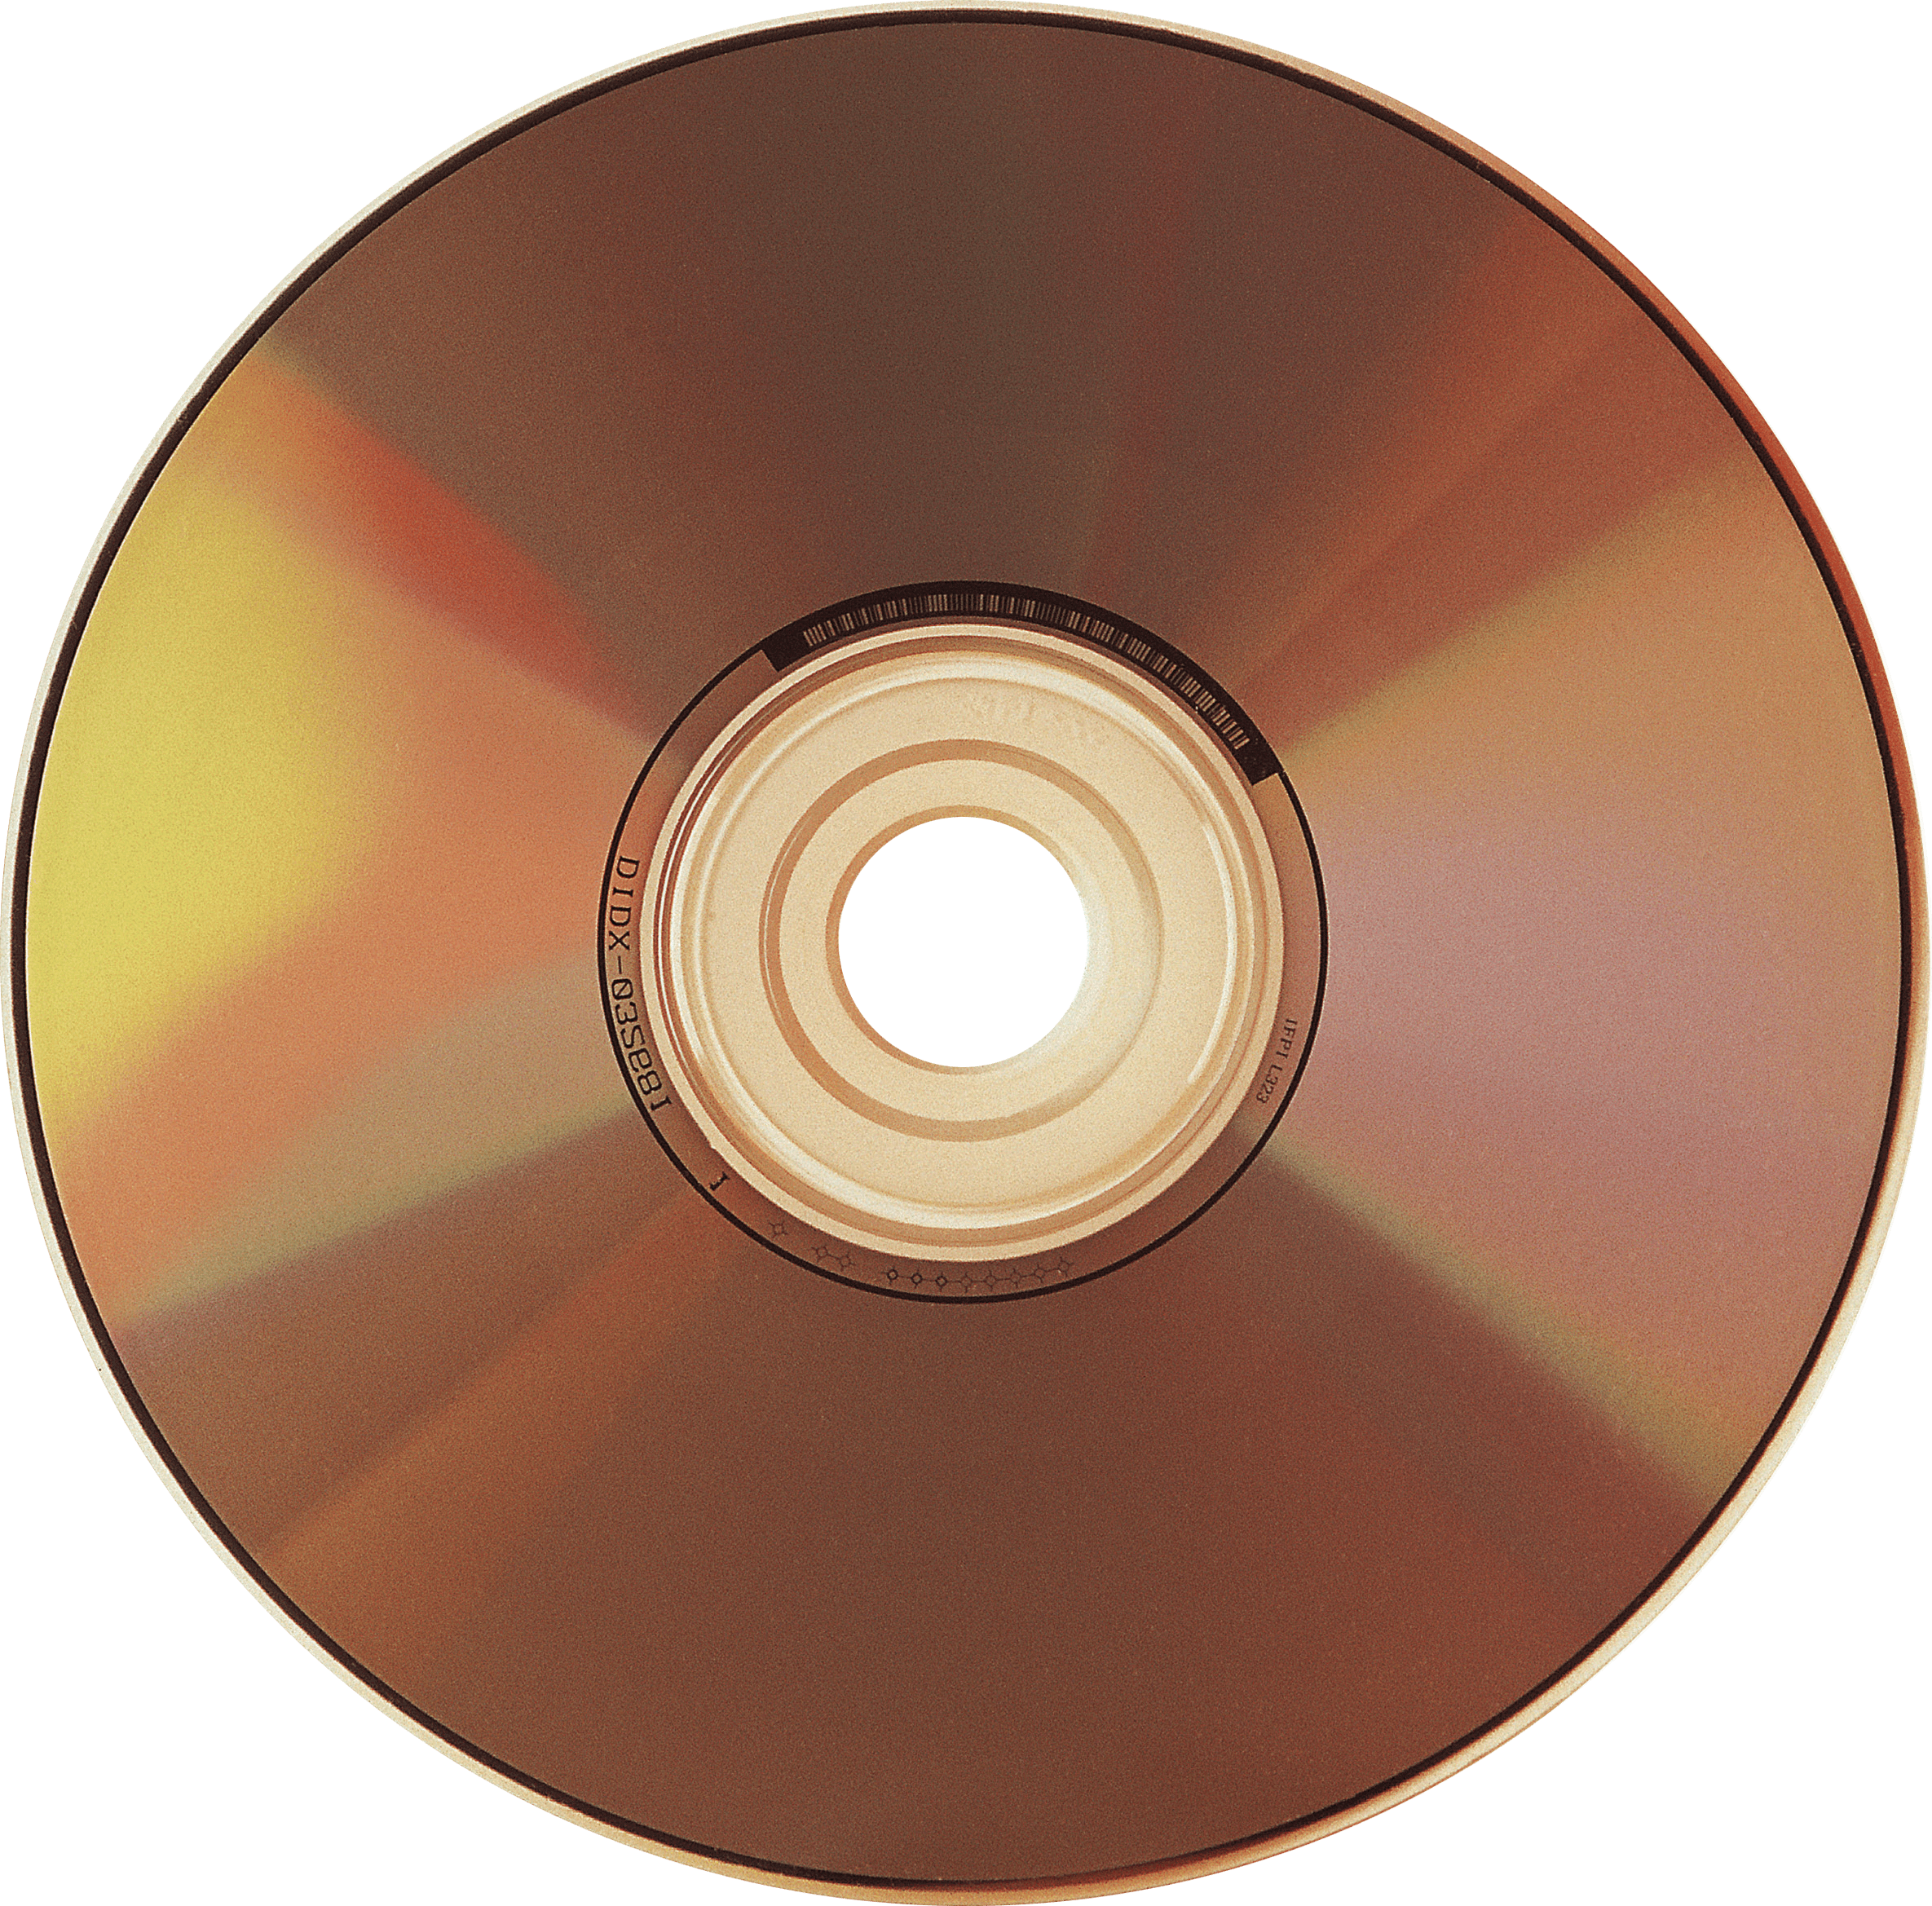 CD - Compact Disk (компакт диск). CD (Compact Disc) — оптический носитель. CD-R DVD. Диски а.. Cd s ru